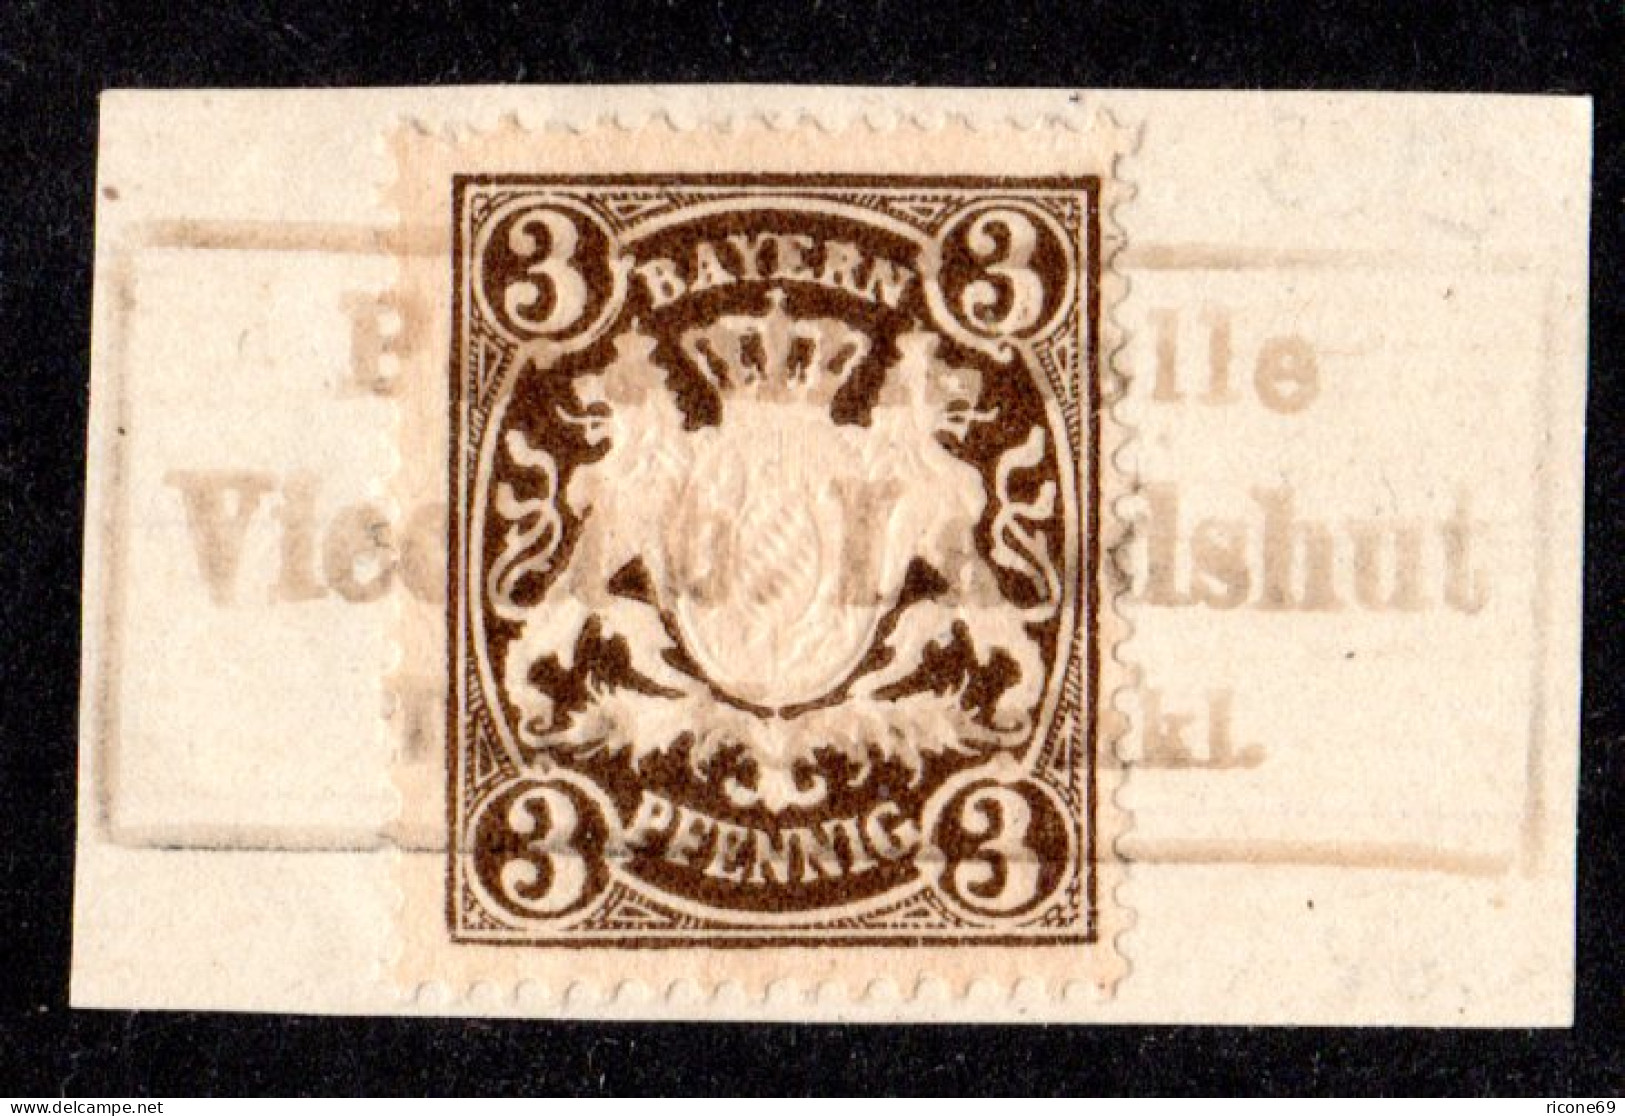 Bayern, Posthilfstelle VIECHT B. LANDSHUT Taxe Kronwinkl Auf Briefstück M. 3 Pf. - Oblitérés